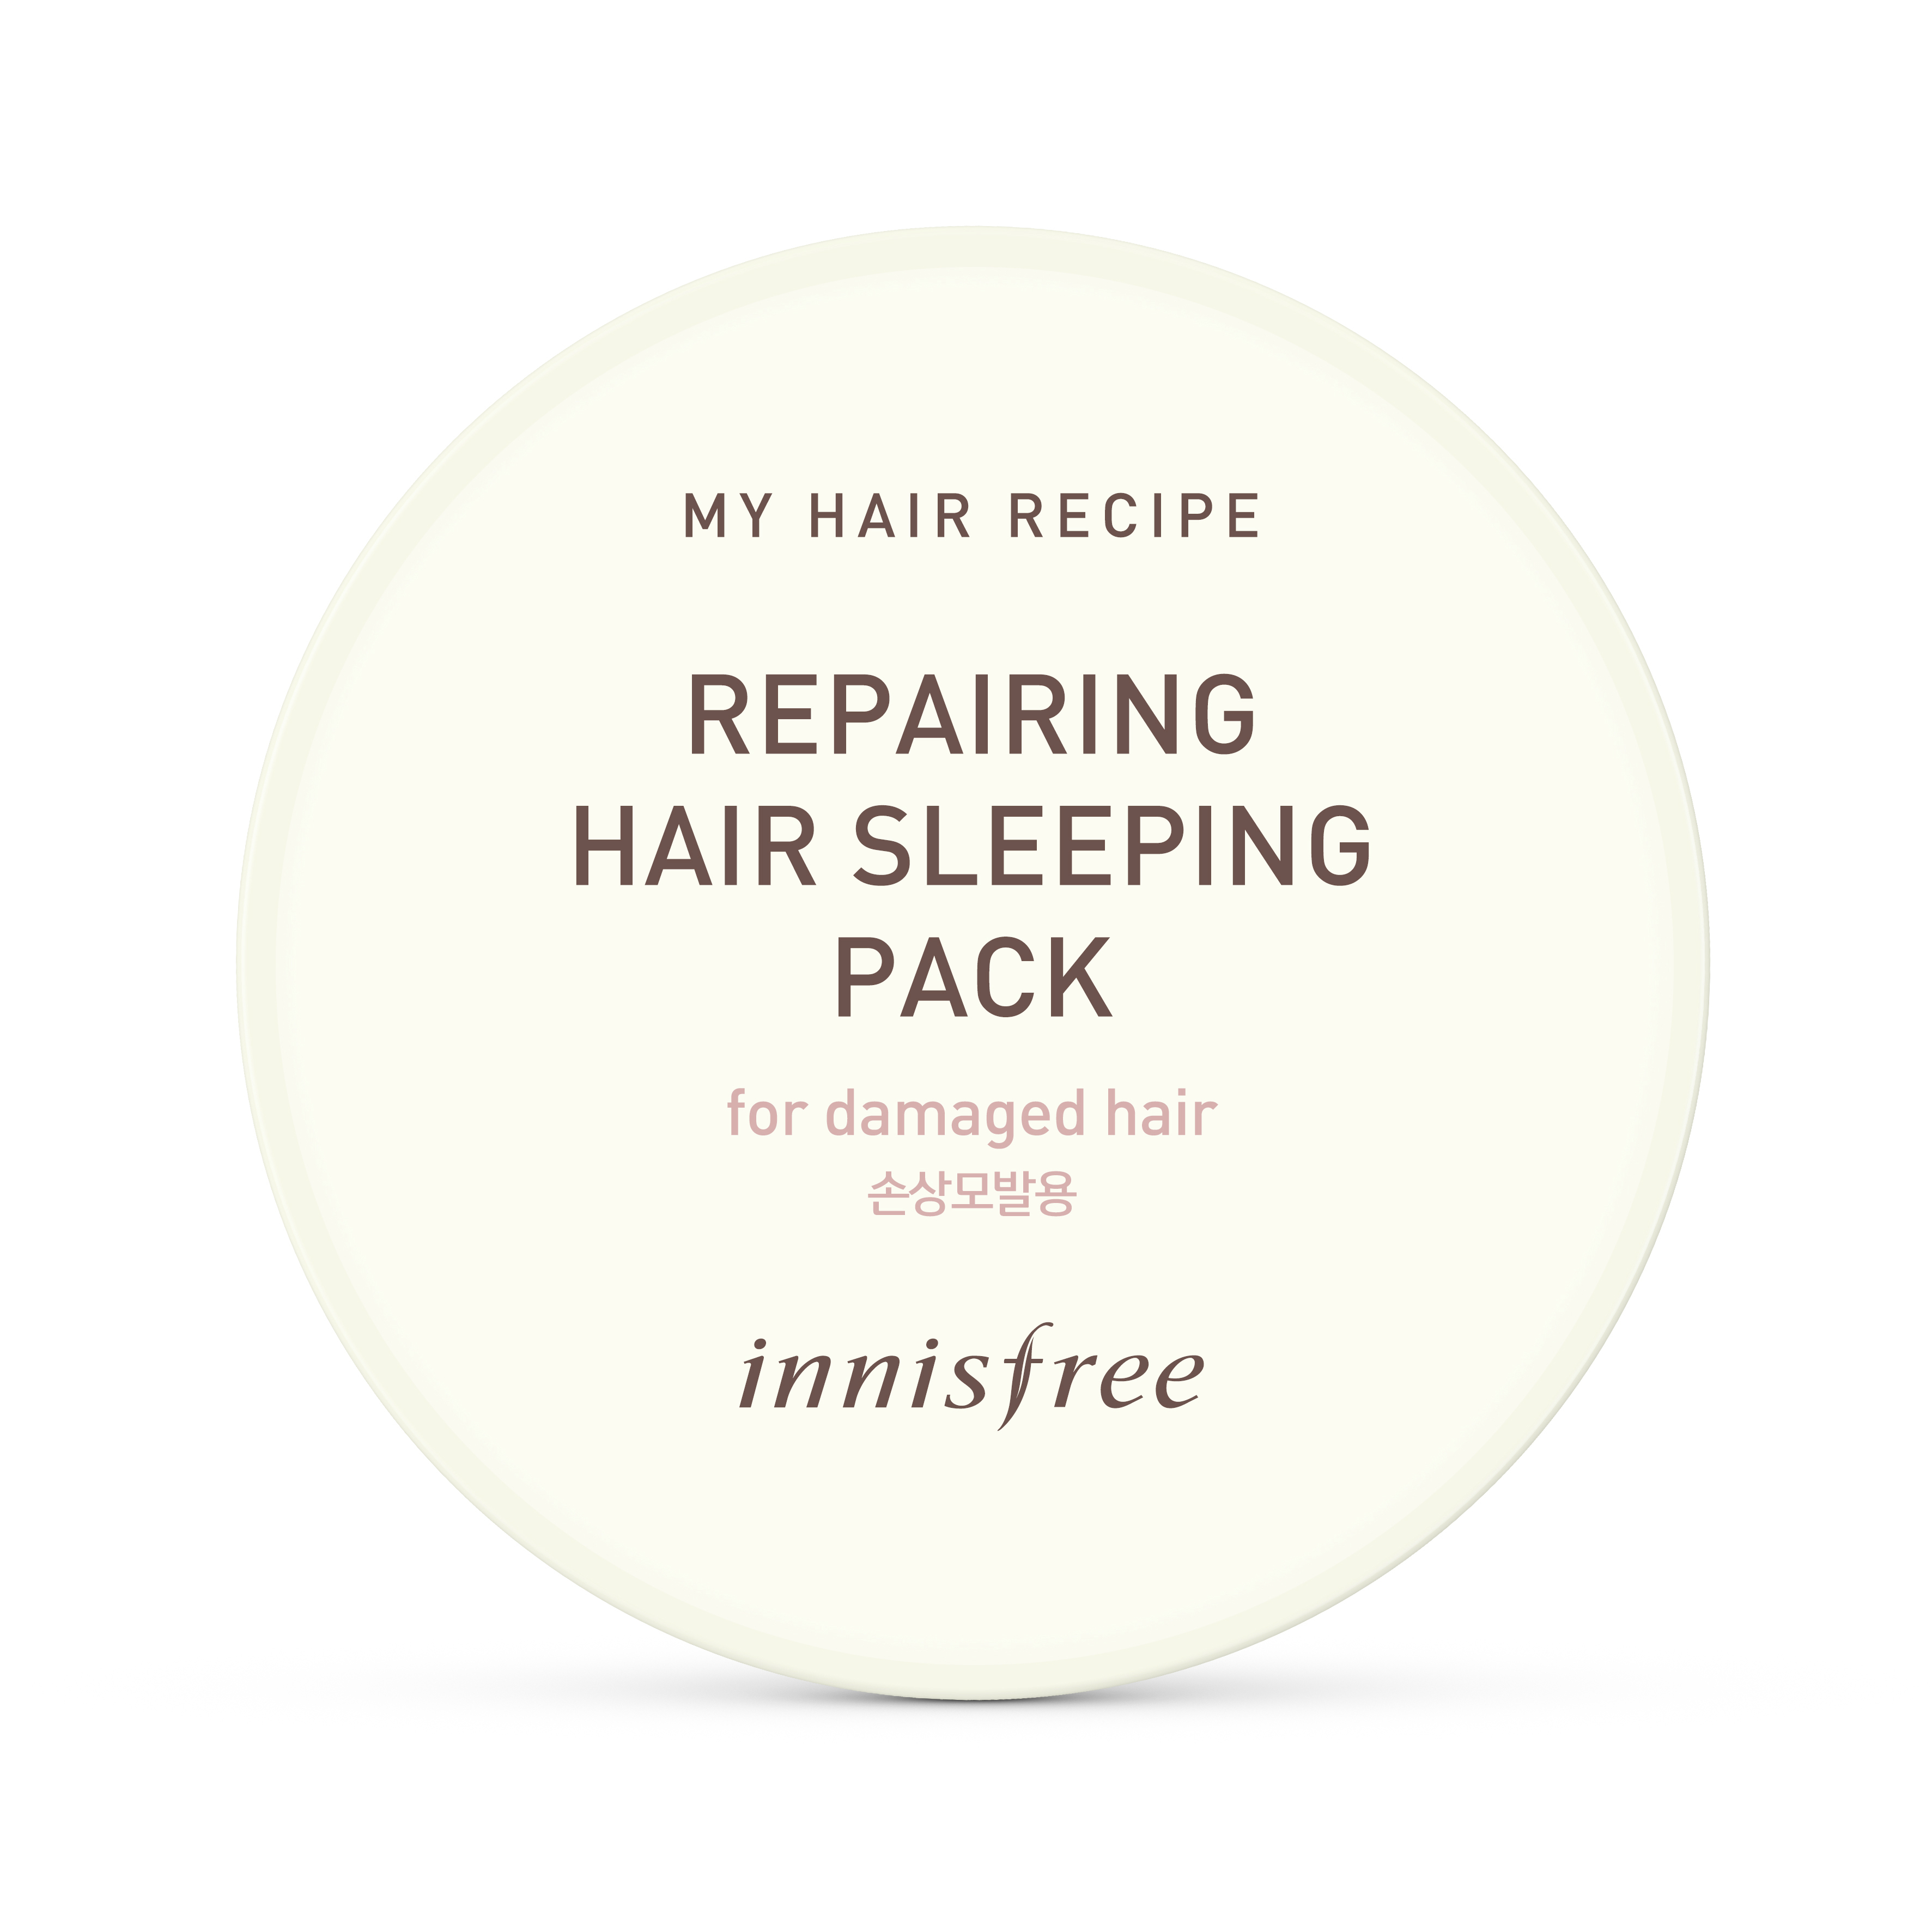 innisfree My Hair Recipe Repairing Hair Sleeping Pack (RM58.00/100ml)-Pamper.my